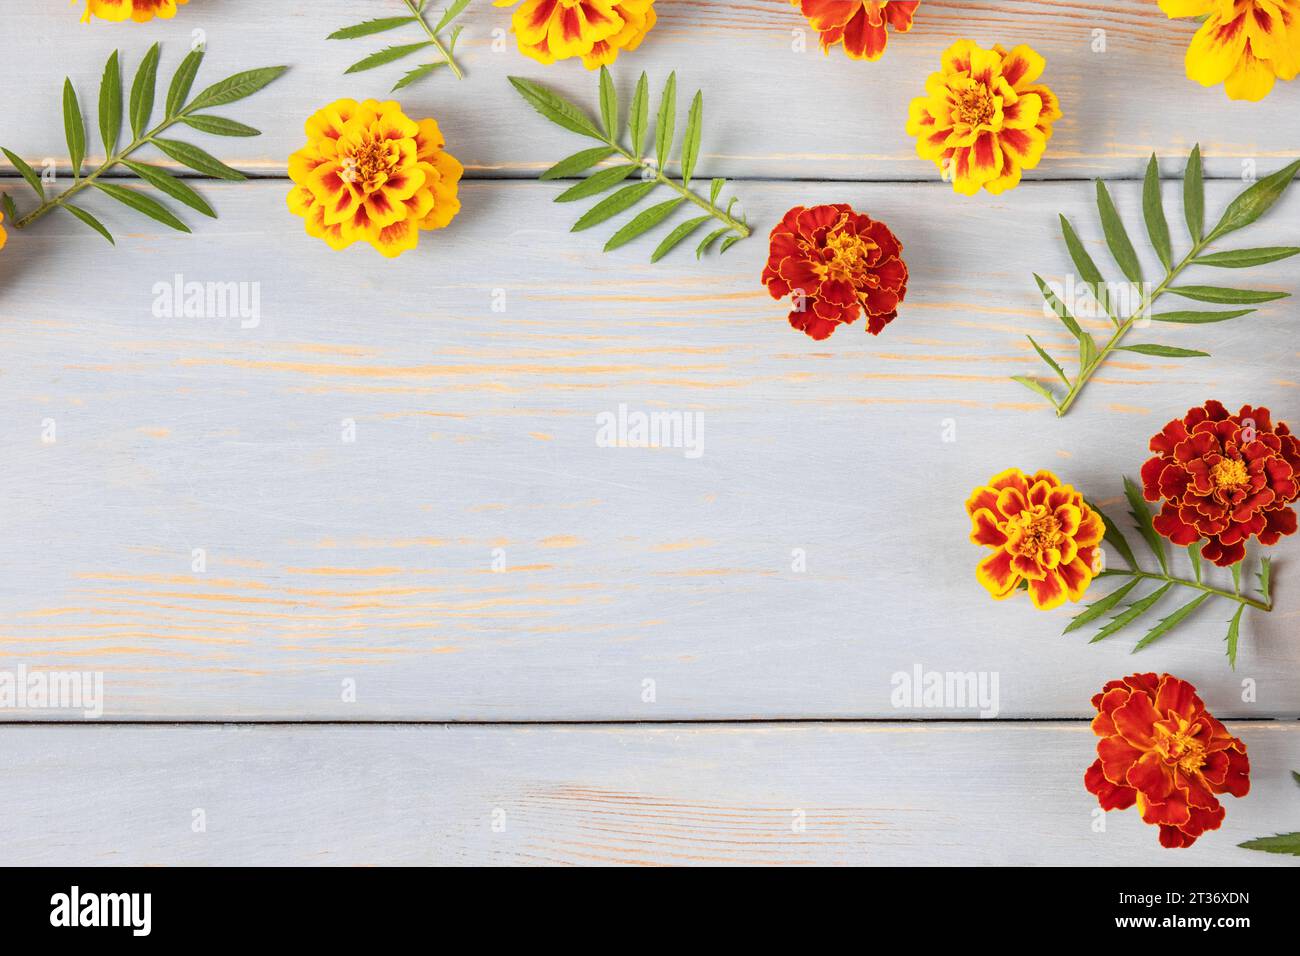 Kreatives Layout aus Blumen und Ringelblumen auf einem blauen Holztisch. Grußkarte mit Blumenmuster. Farbenfroher Herbstblumenhintergrund mit Platz für Te Stockfoto